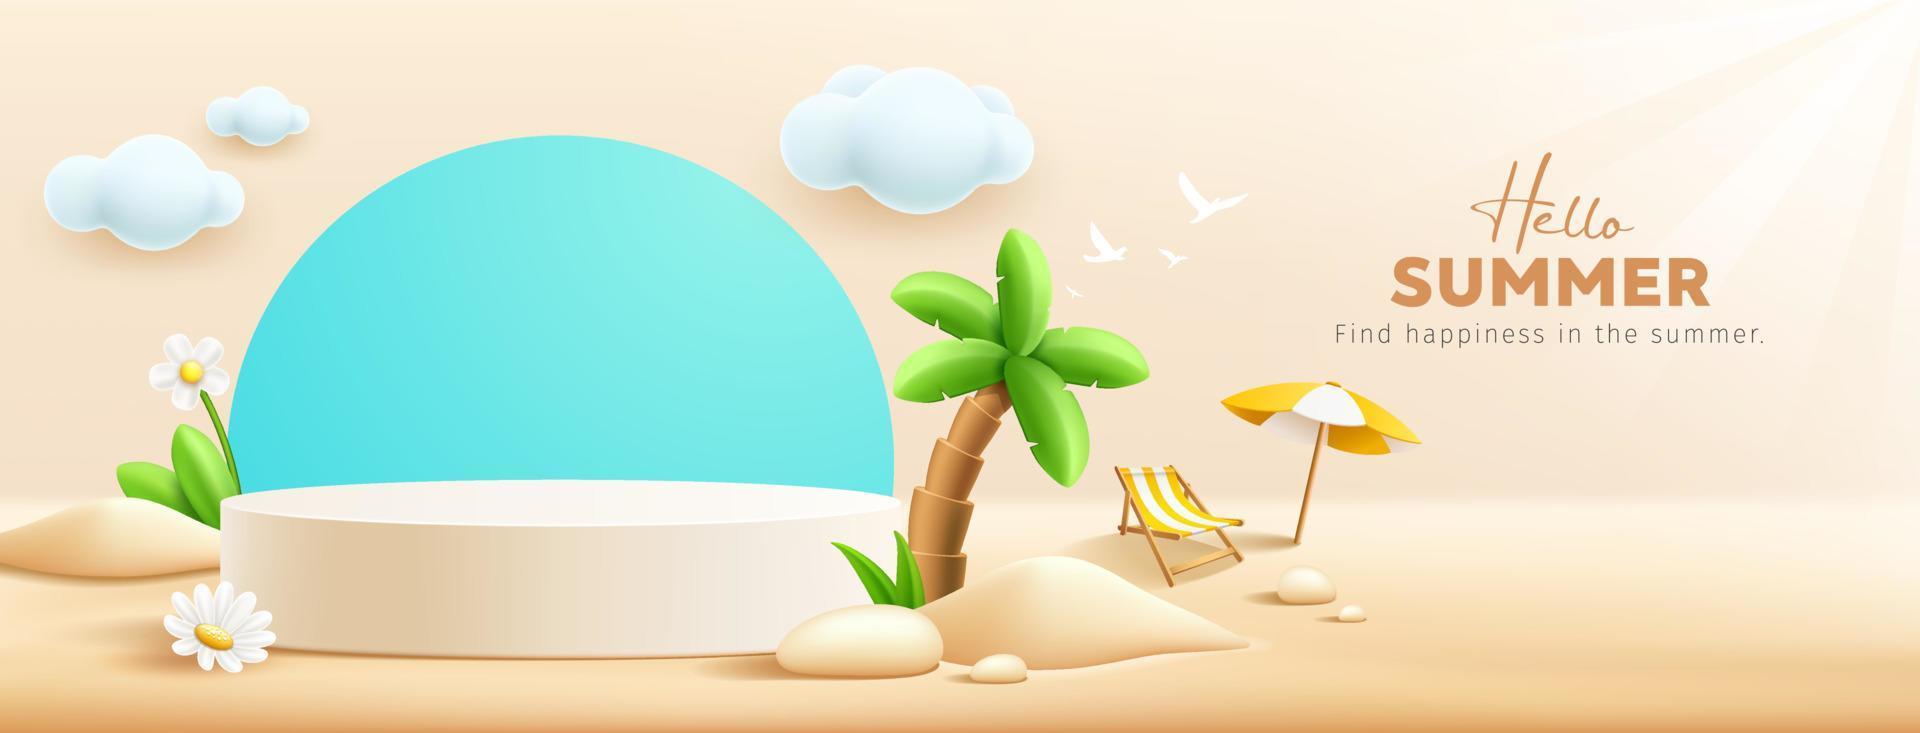 été podium afficher, pile de sable, fleurs, noix de coco arbre, plage parapluie, plage chaise, bannière conception, sur nuage et le sable plage arrière-plan, eps dix vecteur illustration